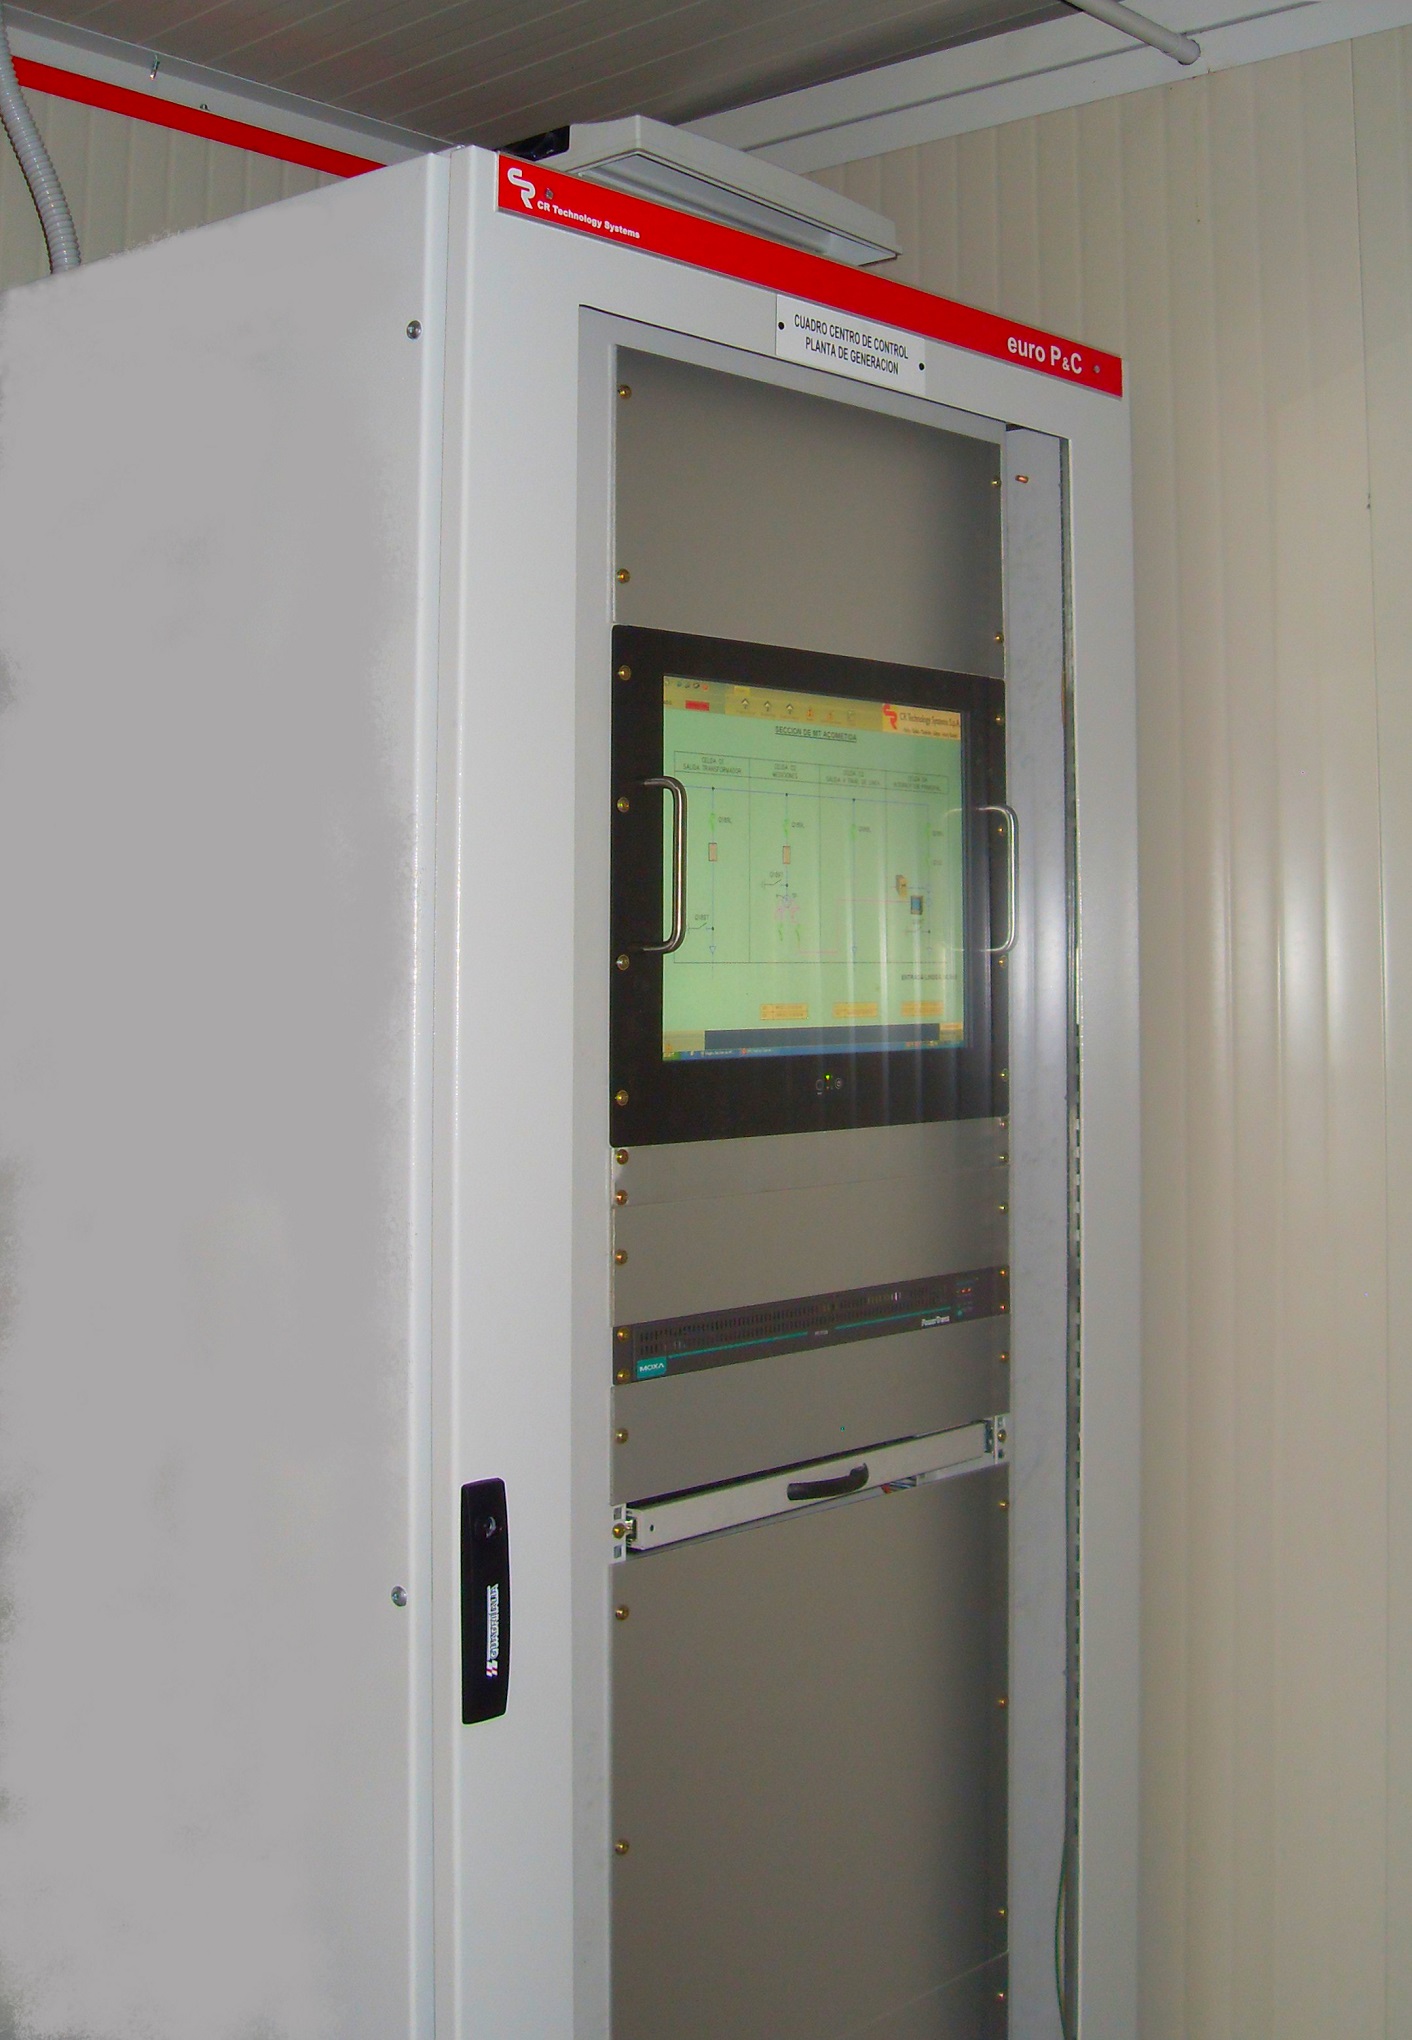 sistema SCADA para monitoreo de la Subestacion eléctrica